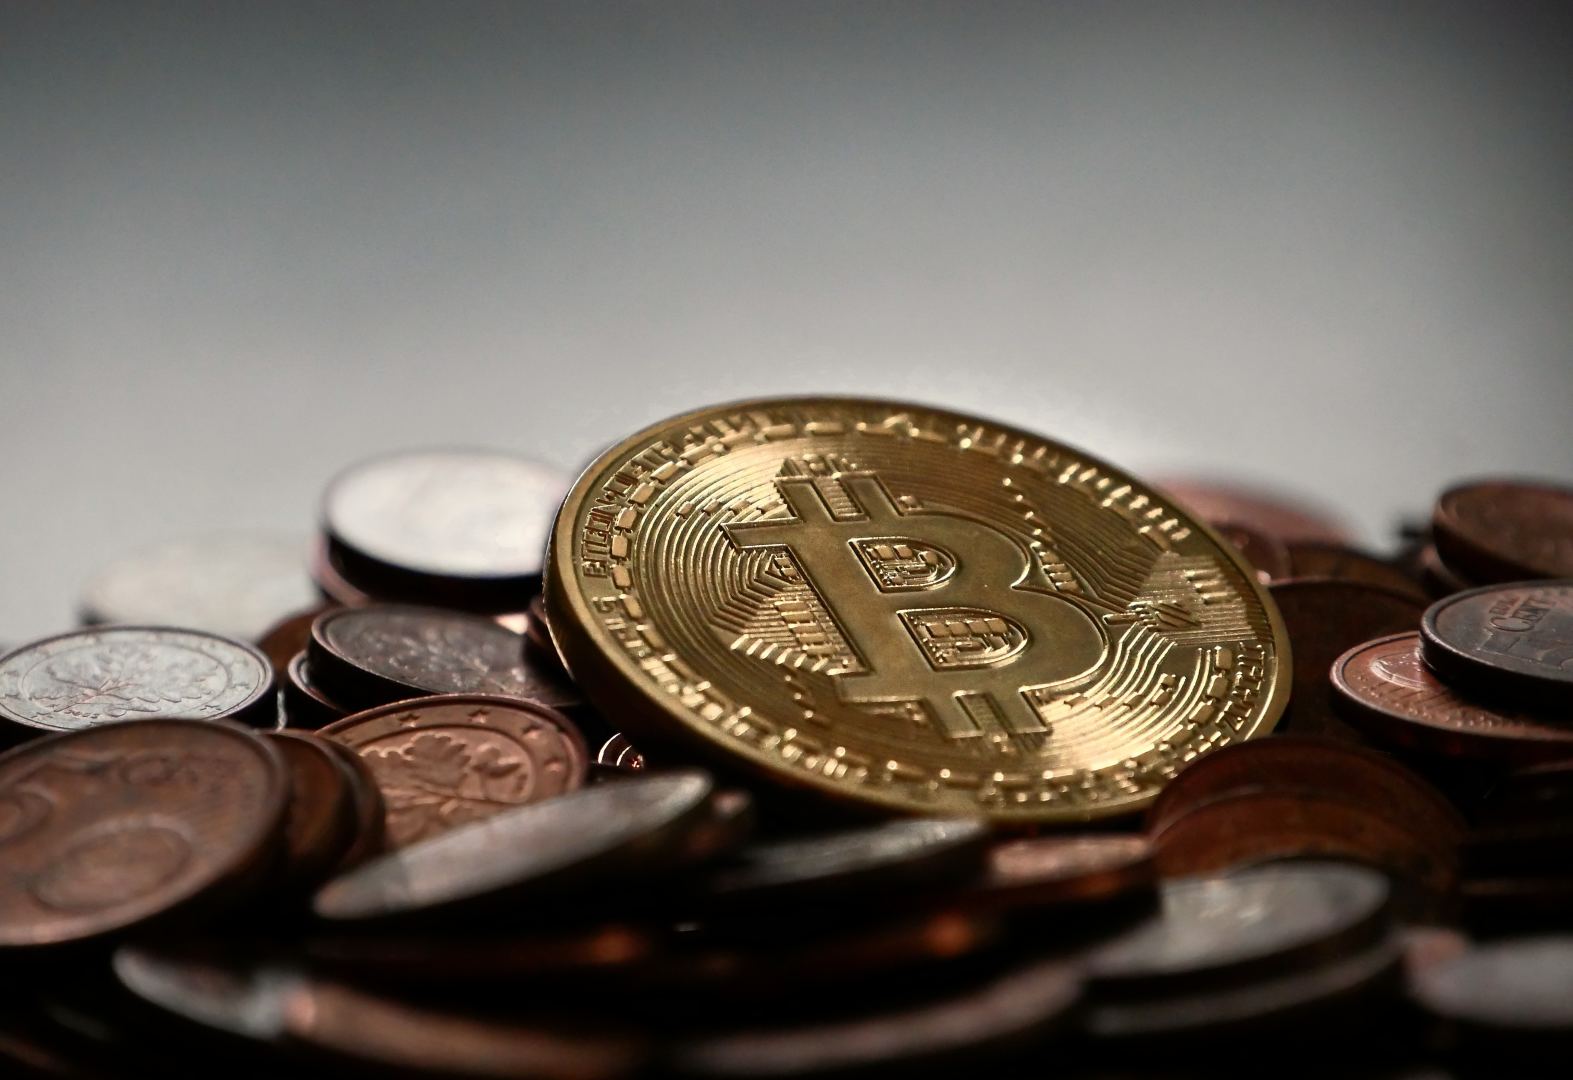 Lengviausias būdas užsidirbti bitkoinų - Kur galite užsidirbti pinigų internetinėse apžvalgose